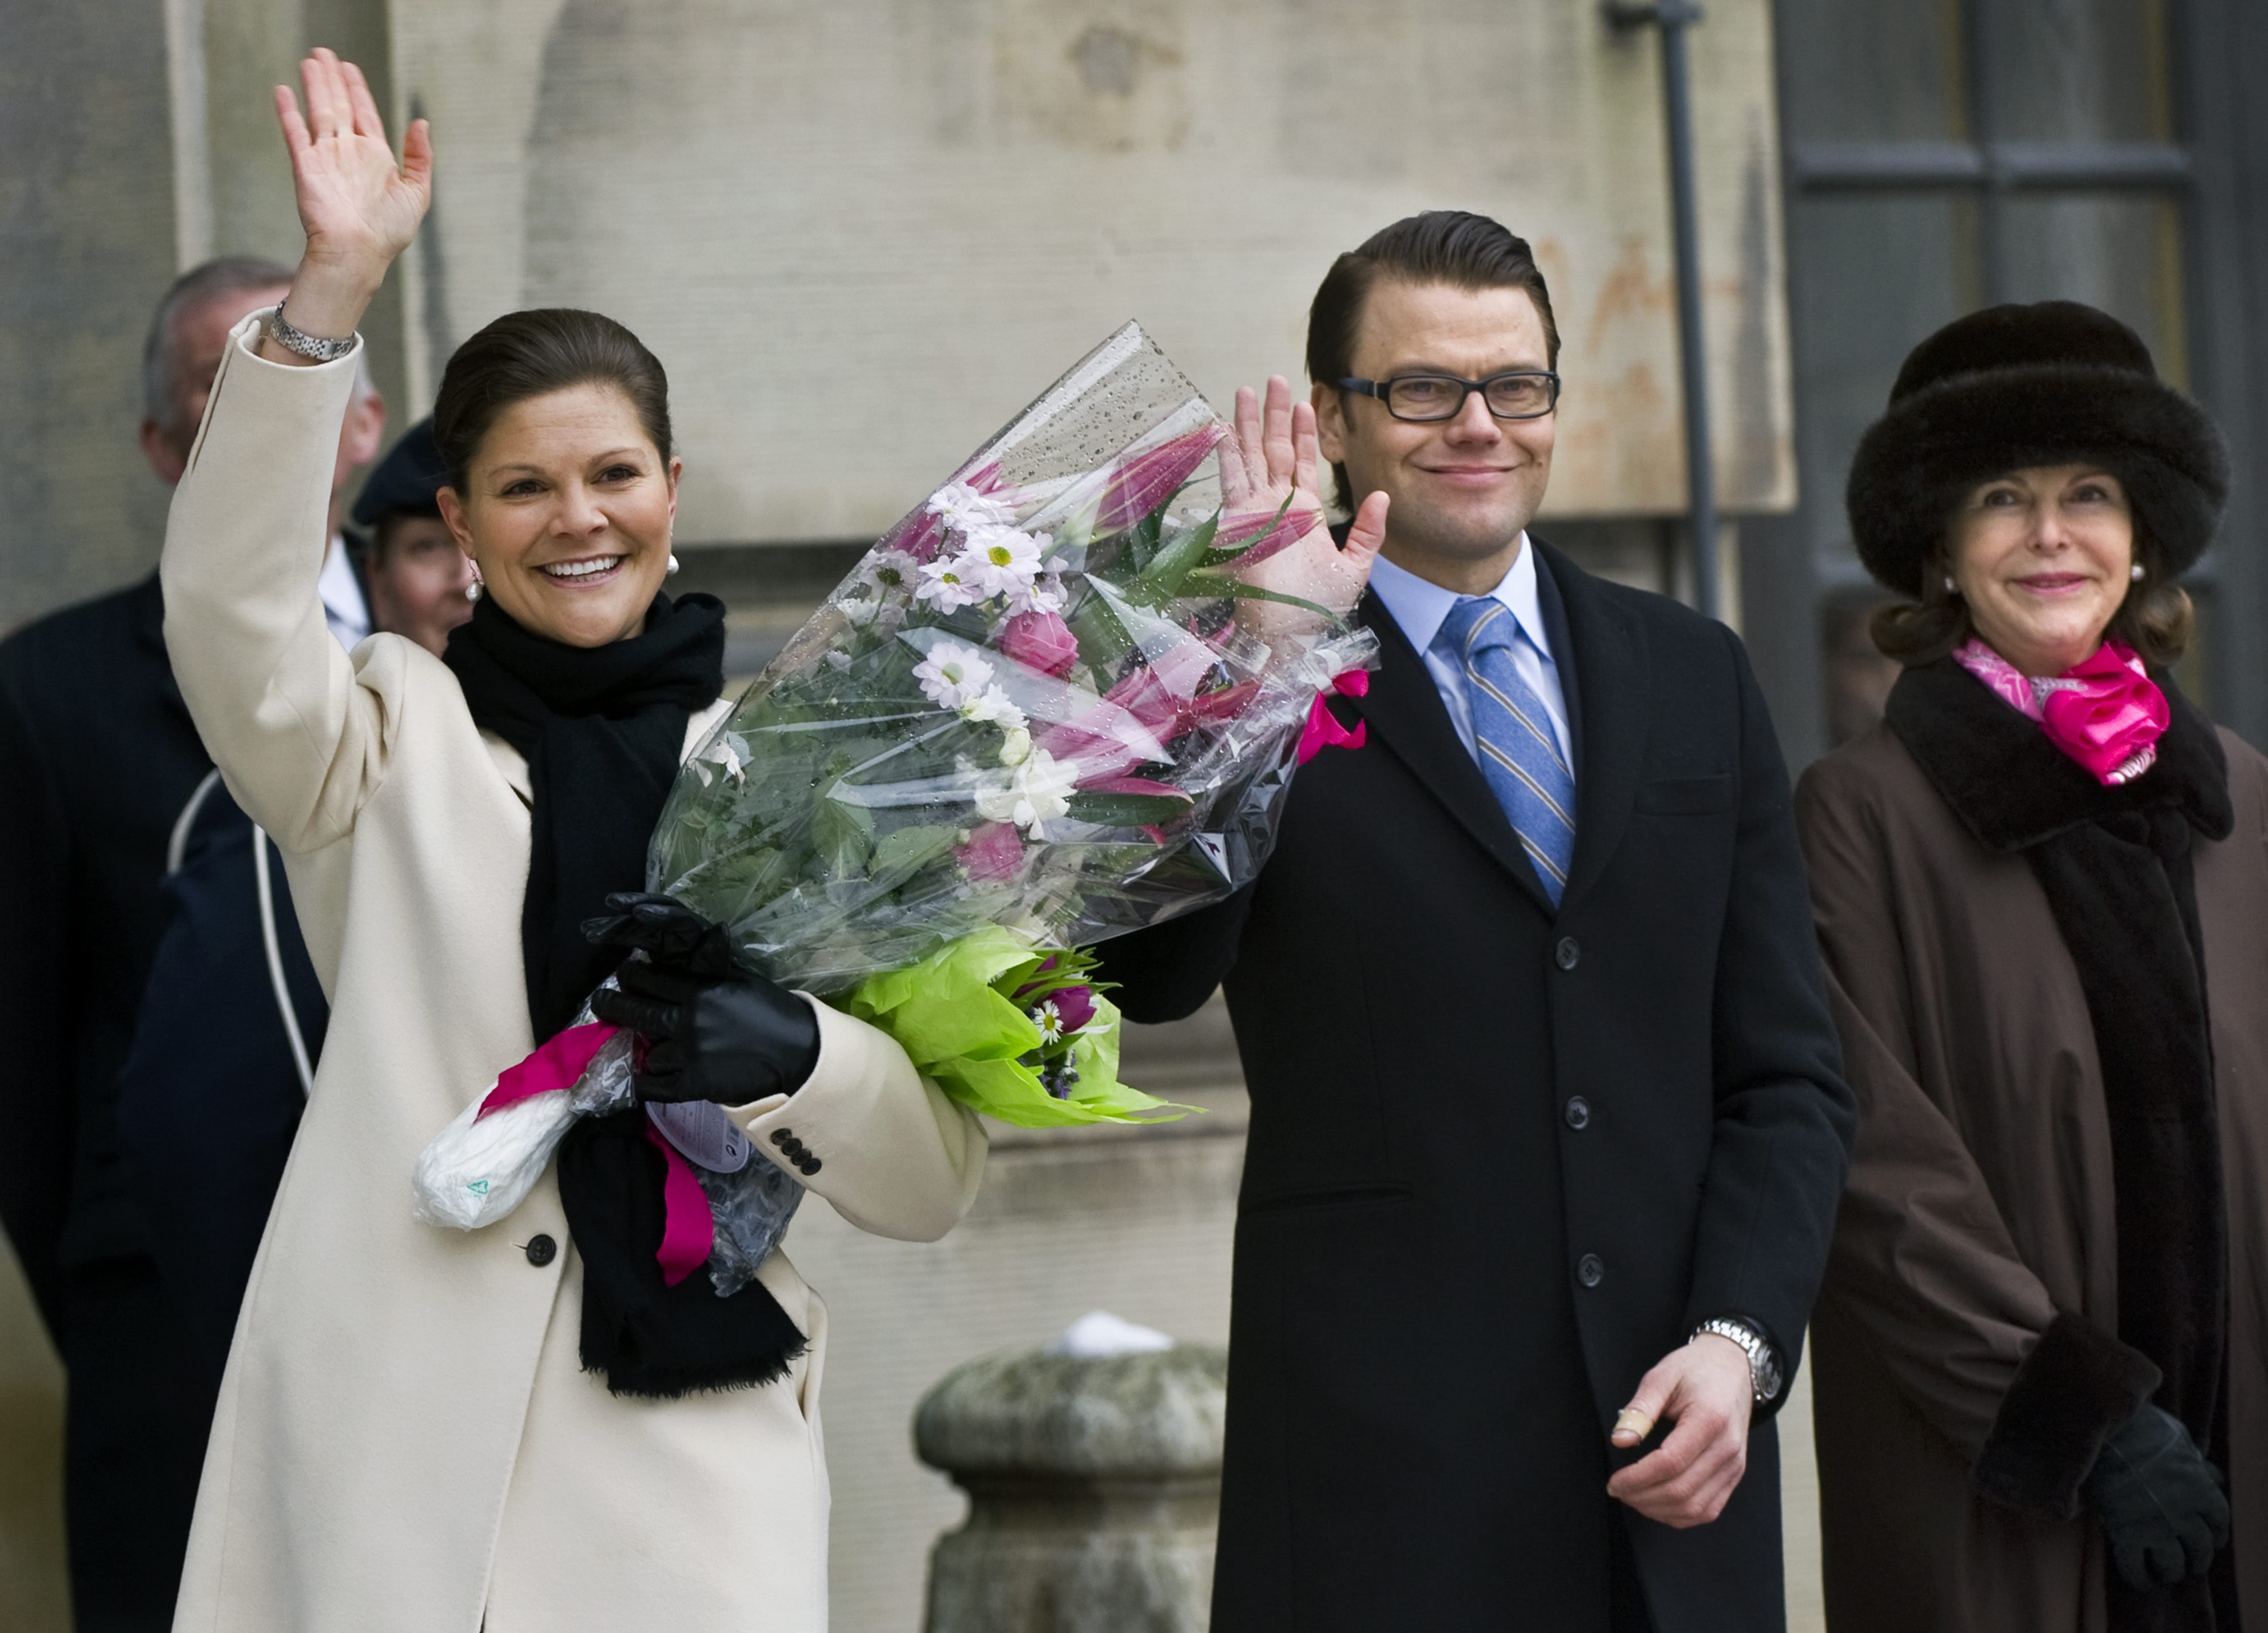 Monarki, Prins Daniel, Republik, Kungliga bröllop, President, Riksdagsvalet 2010, Kungligt, kronprinsessan Victoria, Gudrun Schyman, Feministiskt initiativ